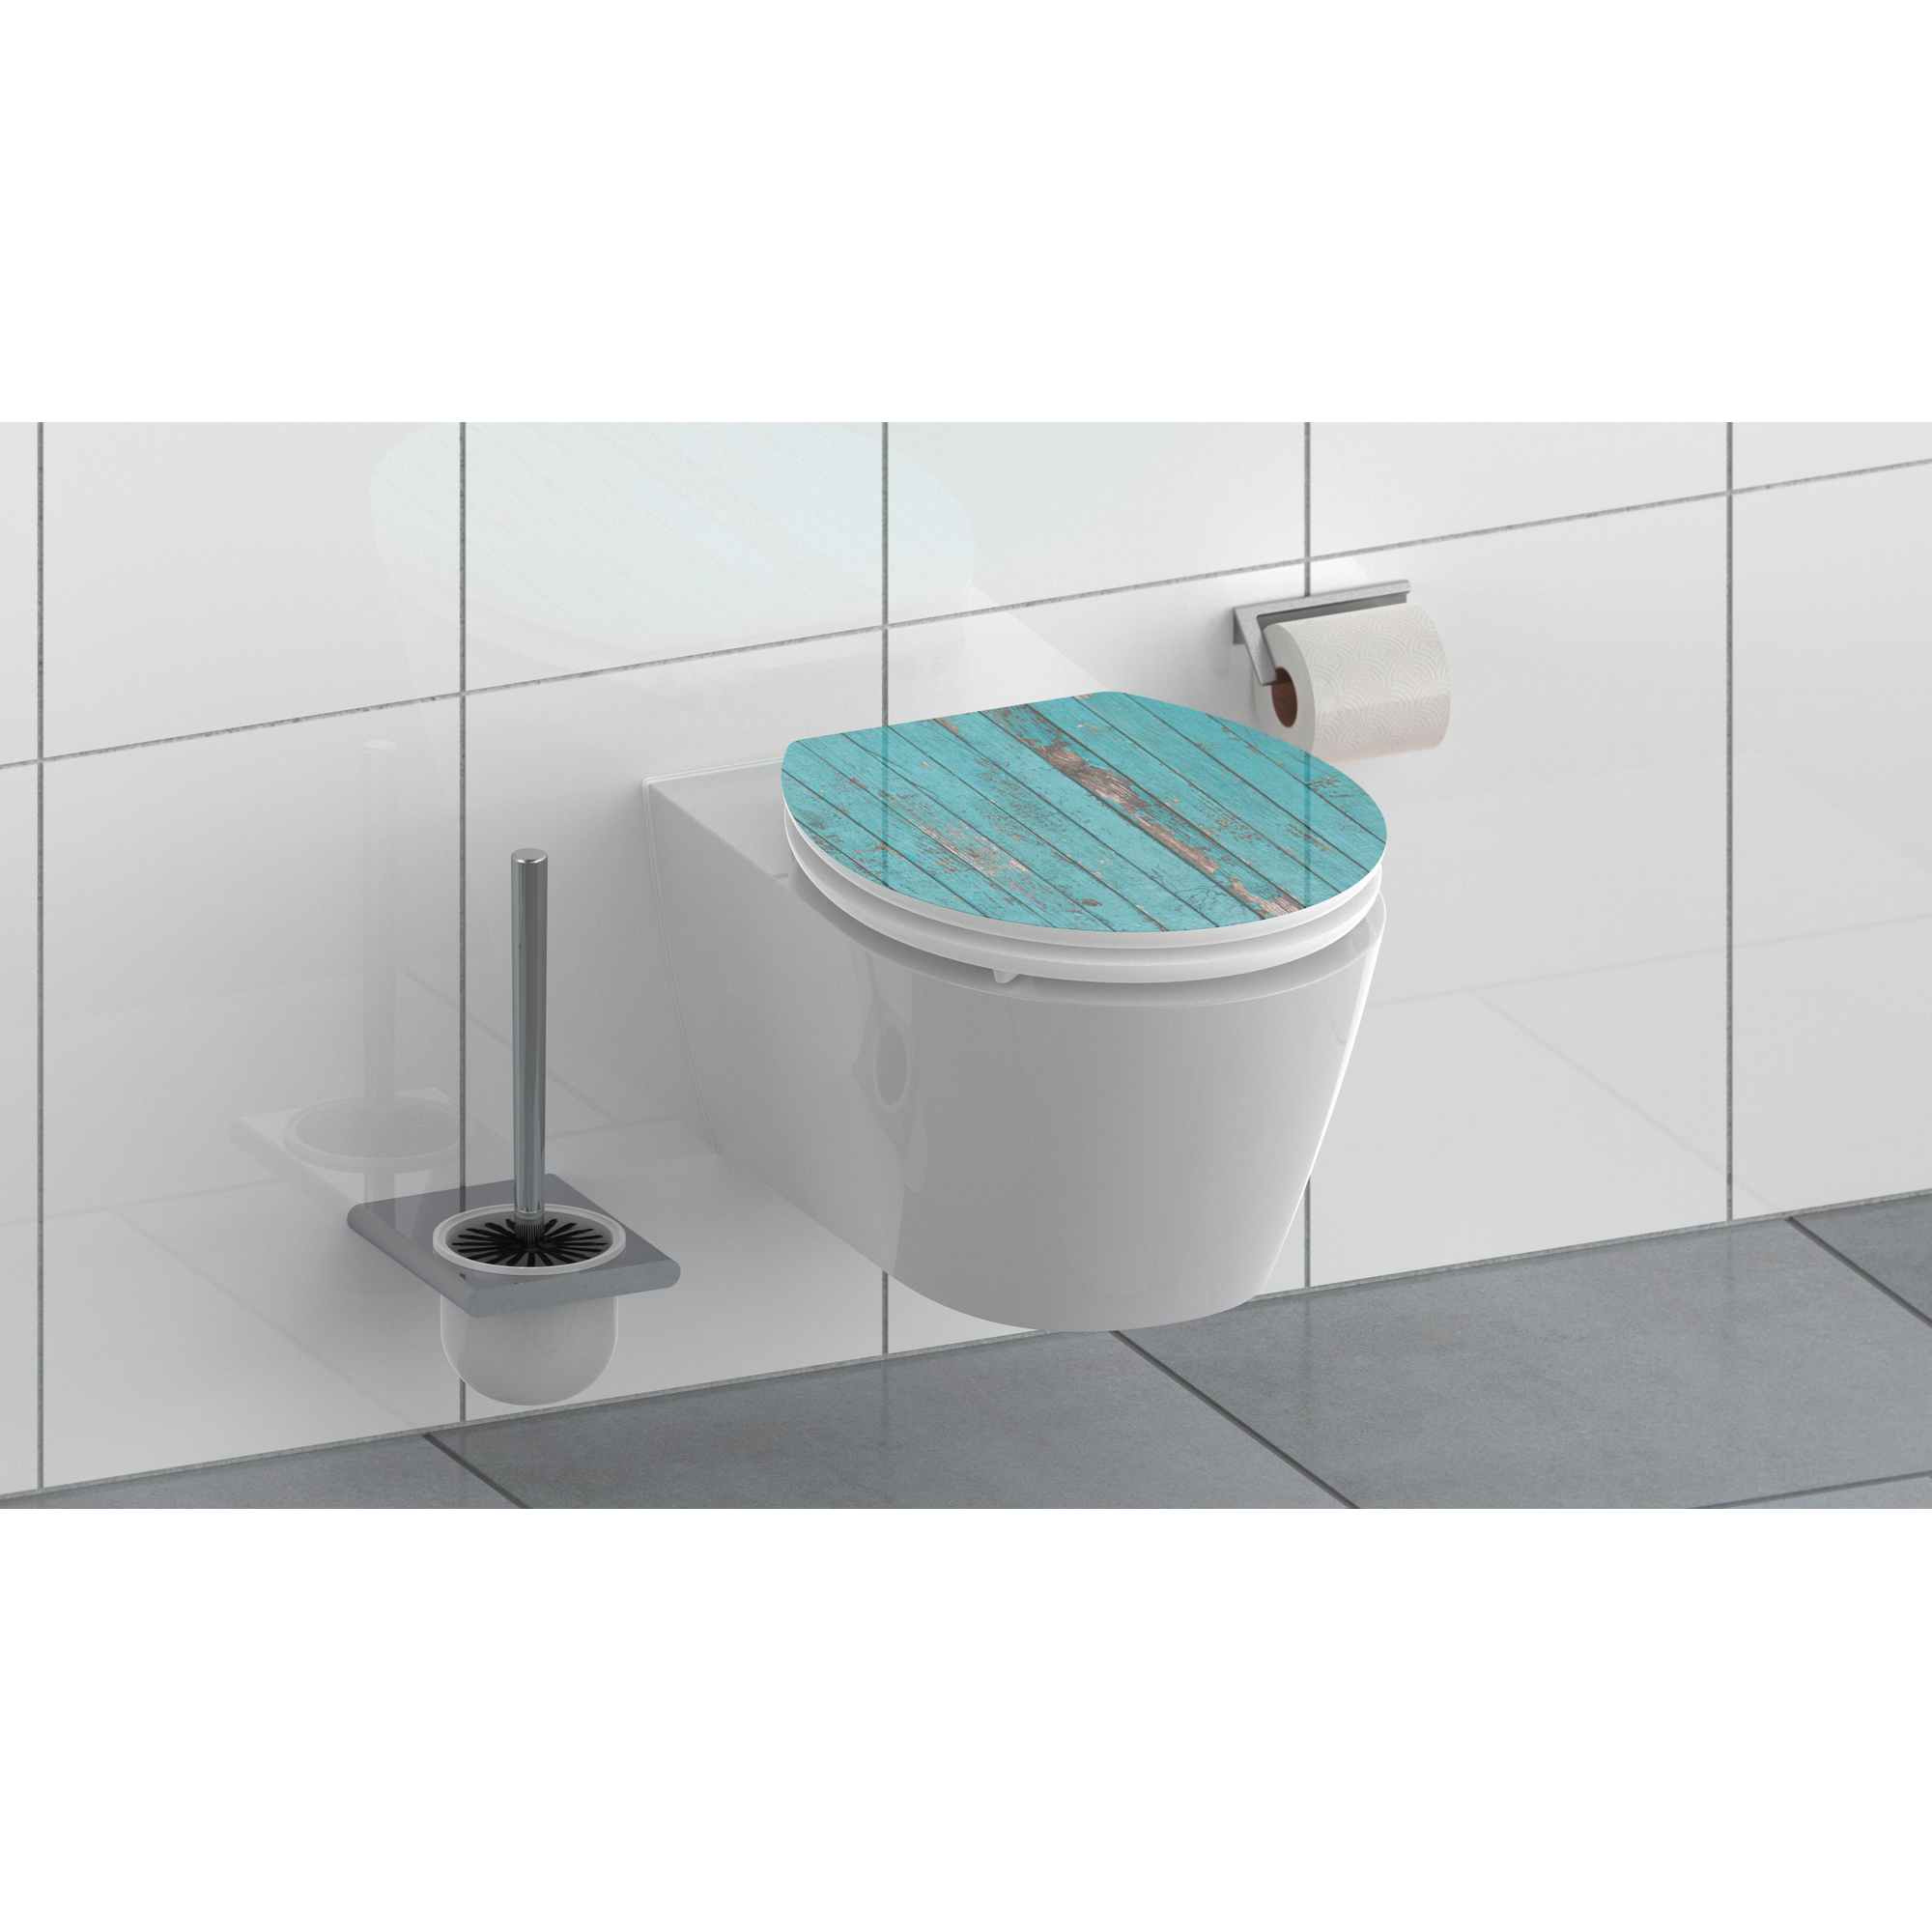 WC-Sitz 'Blue Wood HG' mit Absenkautomatik blau 37 x 43 cm + product picture